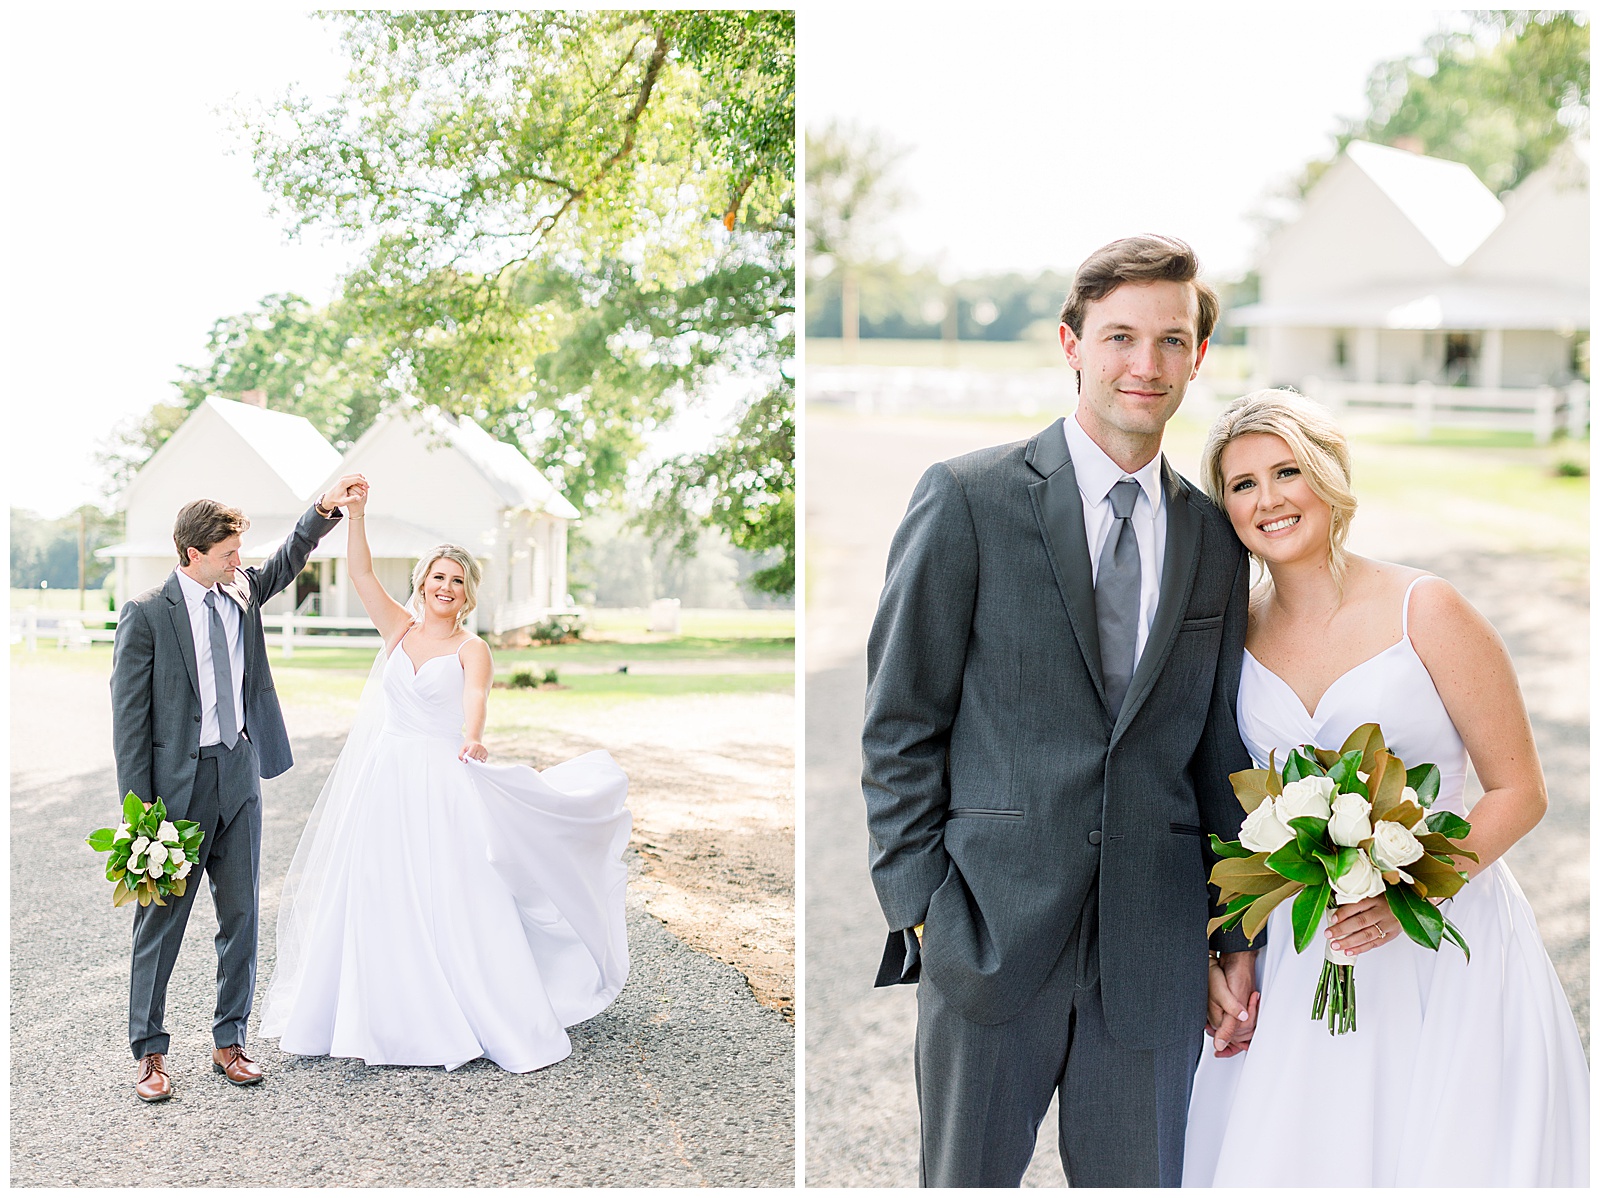 KelseyThomas_Bride&Groom_114_Tuscaloosa-Wedding-Birmingham-Alabama-Wedding-Photographers-Abby-Bates-Photography.jpg